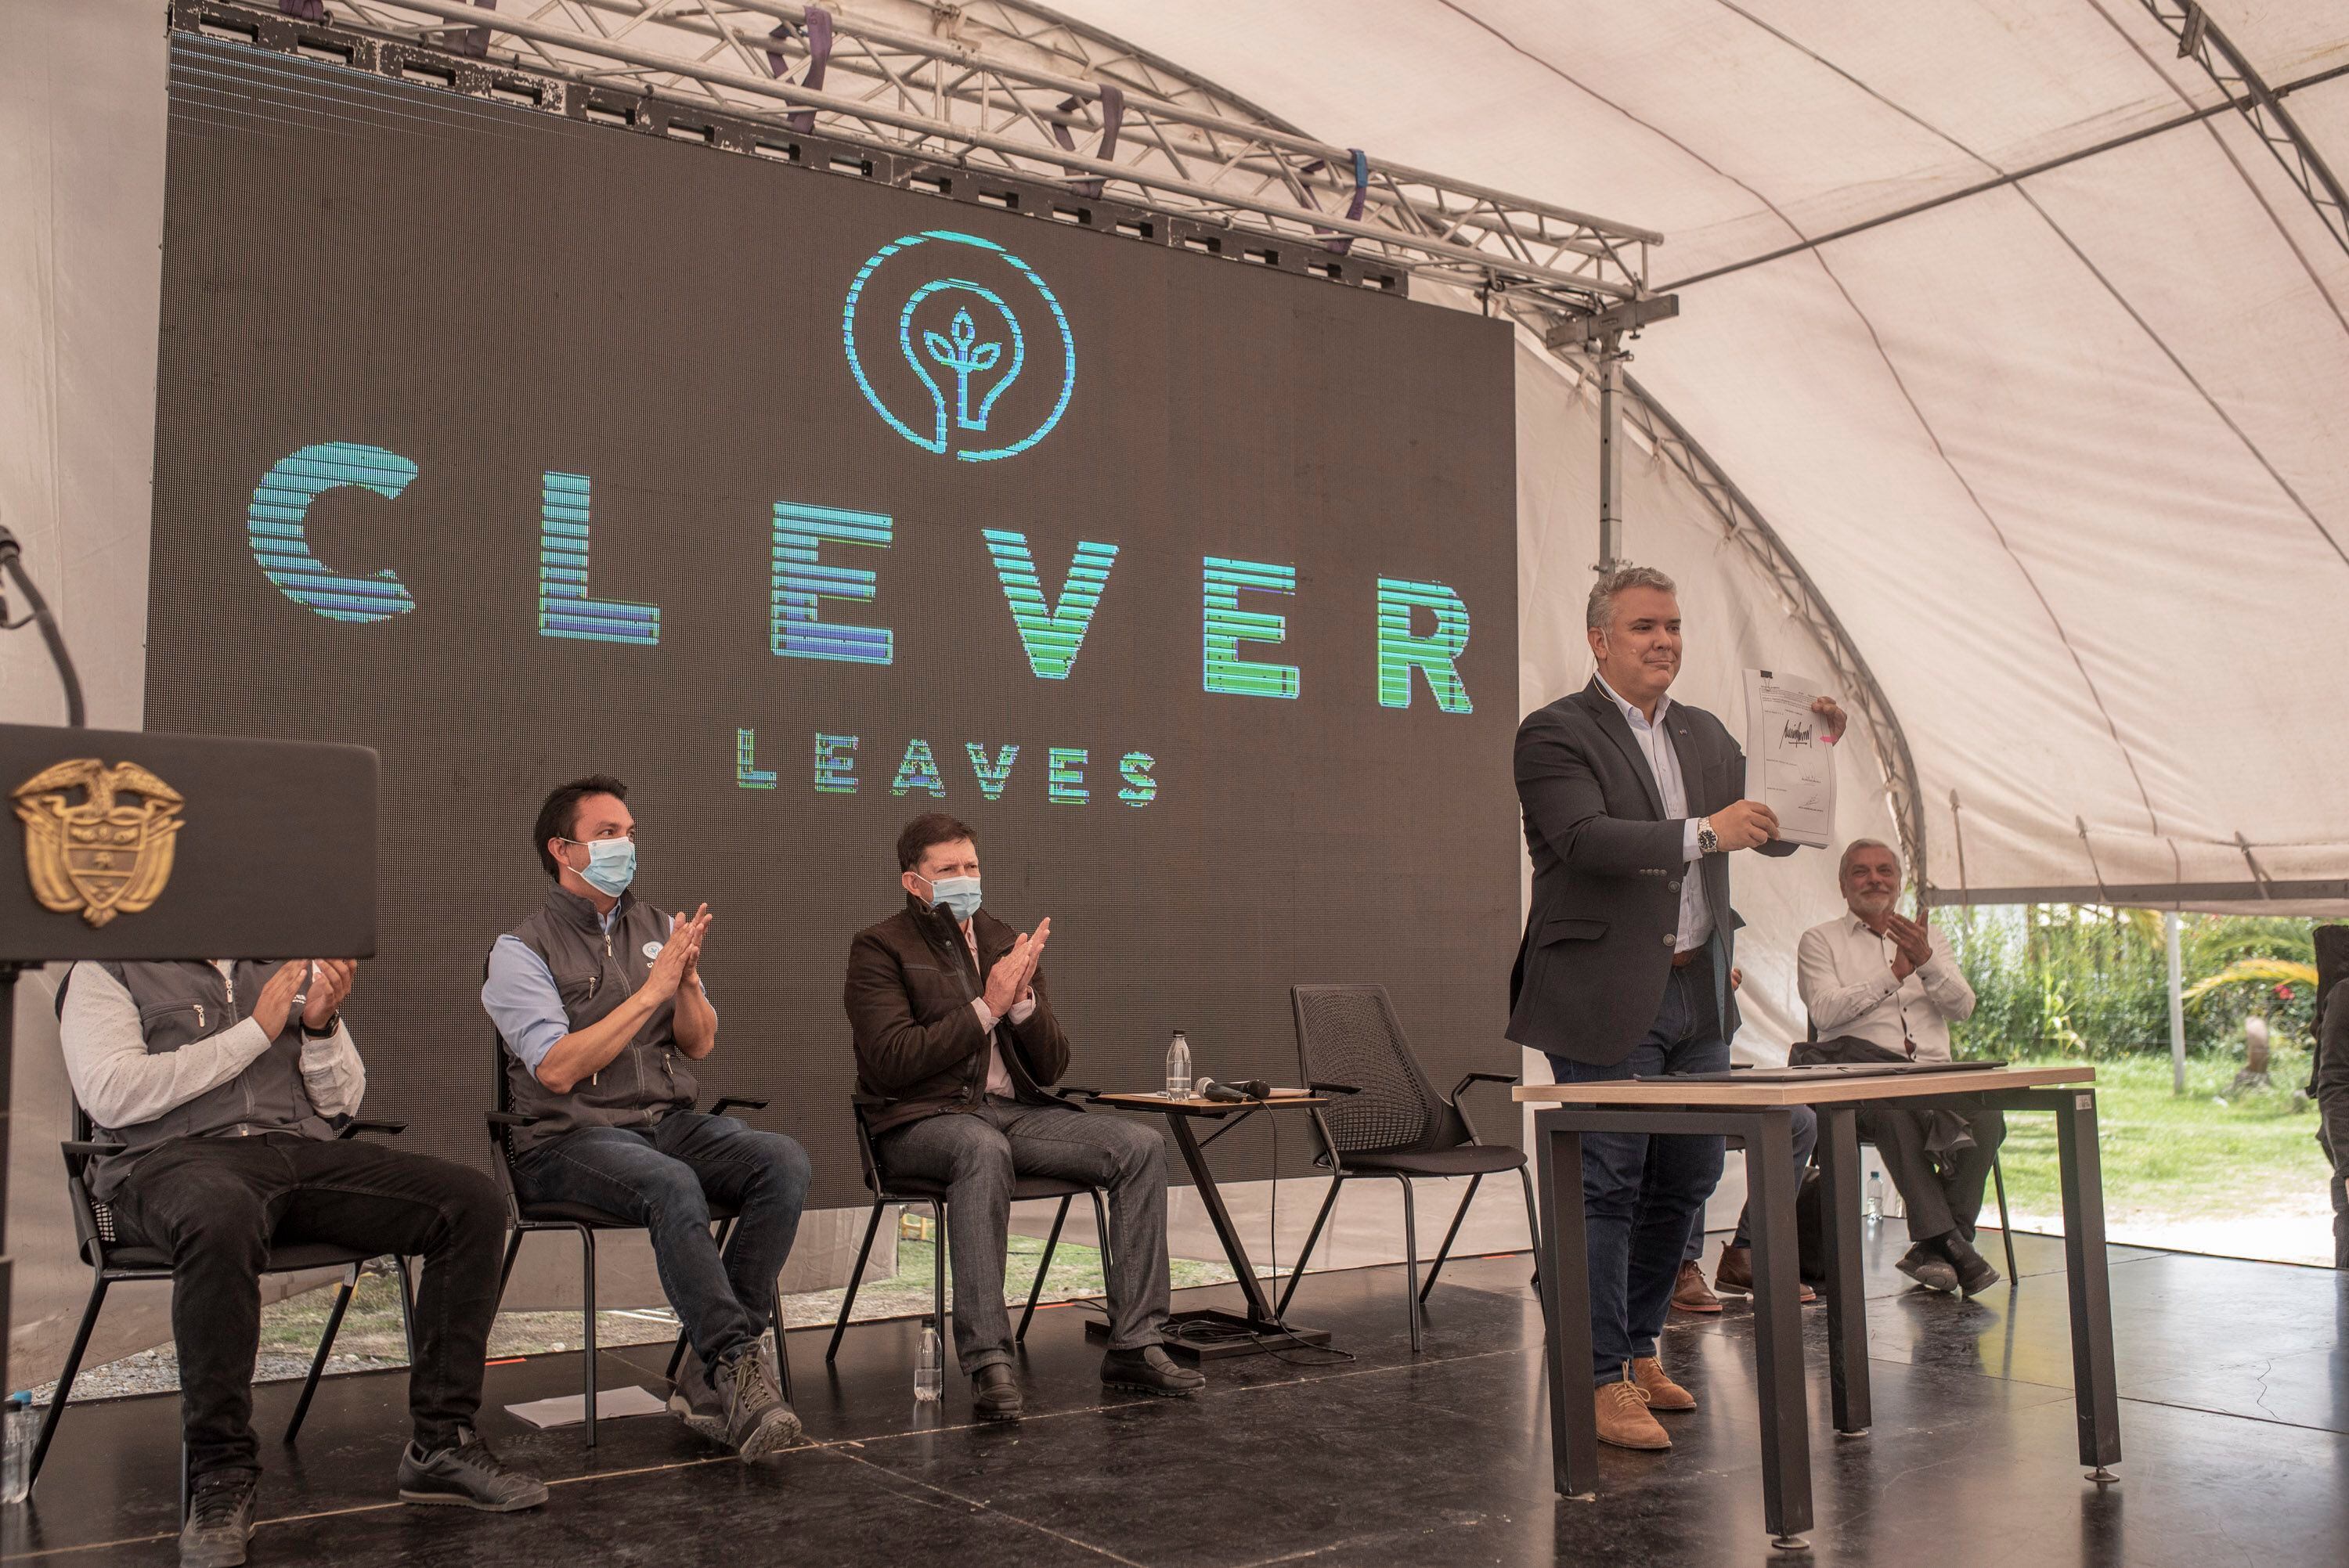 O presidente colombiano, Iván Duque, após a assinatura de um acordo com a empresa Clever Leaves, em Boyacá, Colômbia, no dia 23 de julho. 